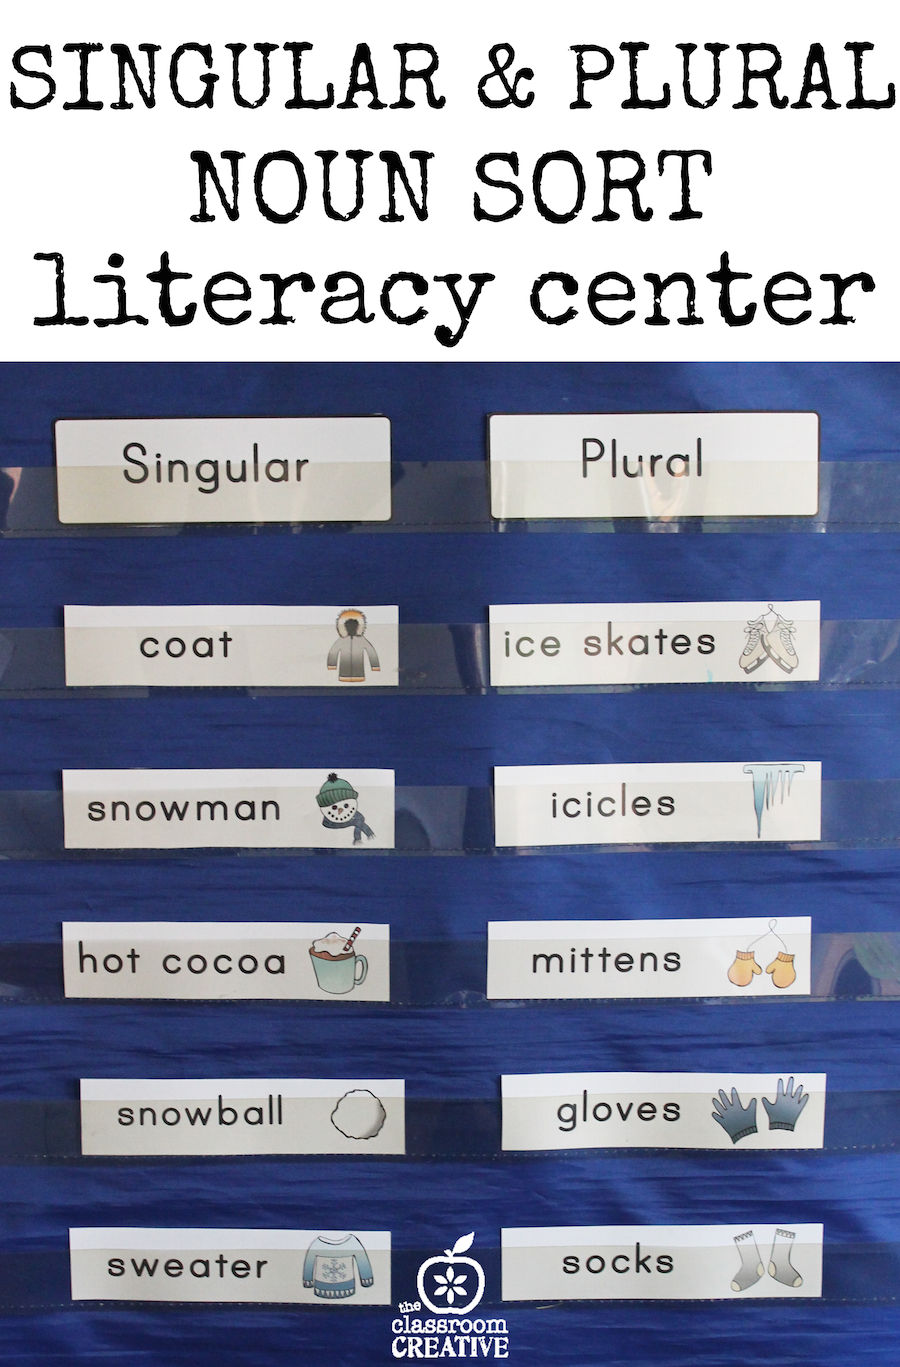 singular and plural noun sorts literacy center theclassroomcreative copy